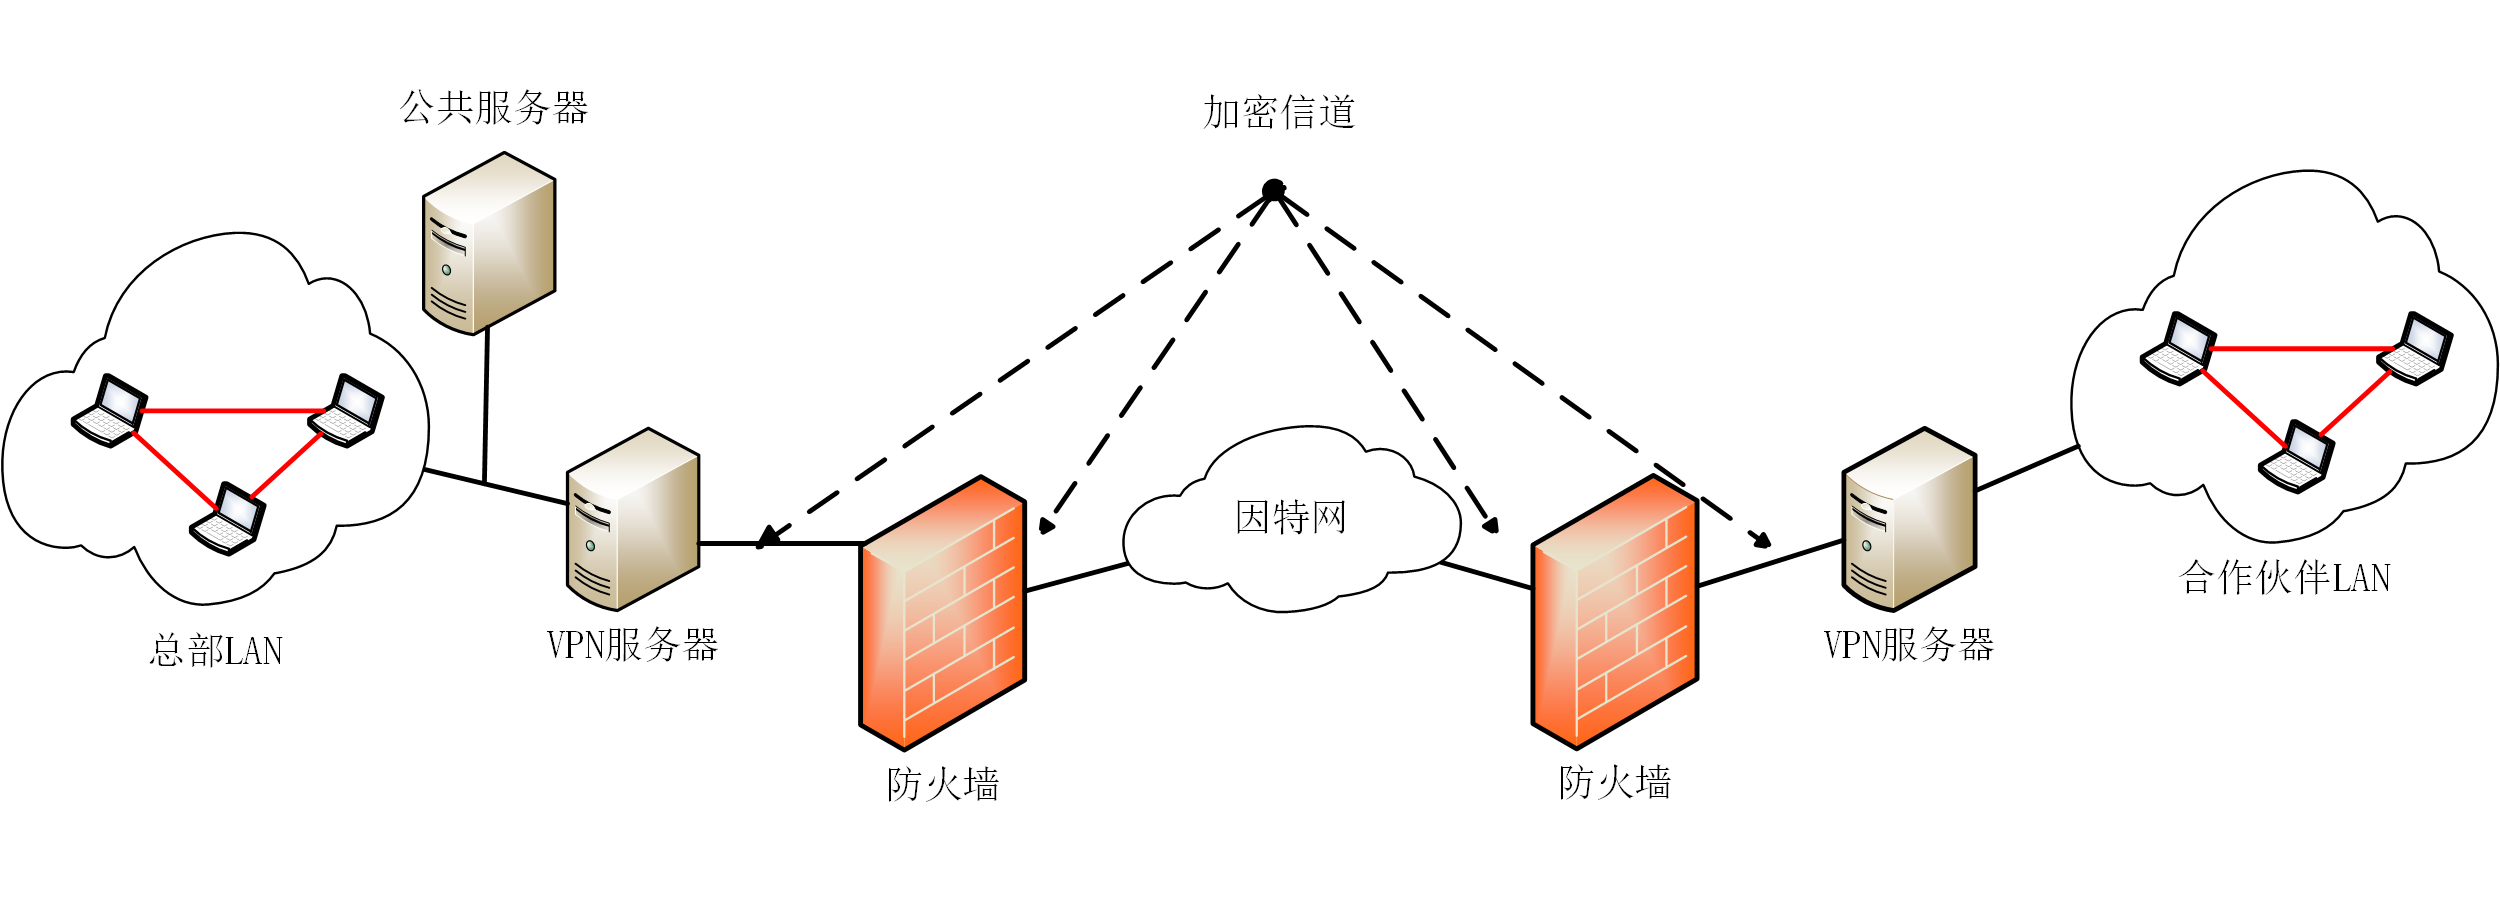 图 3-9 Extranet VPN